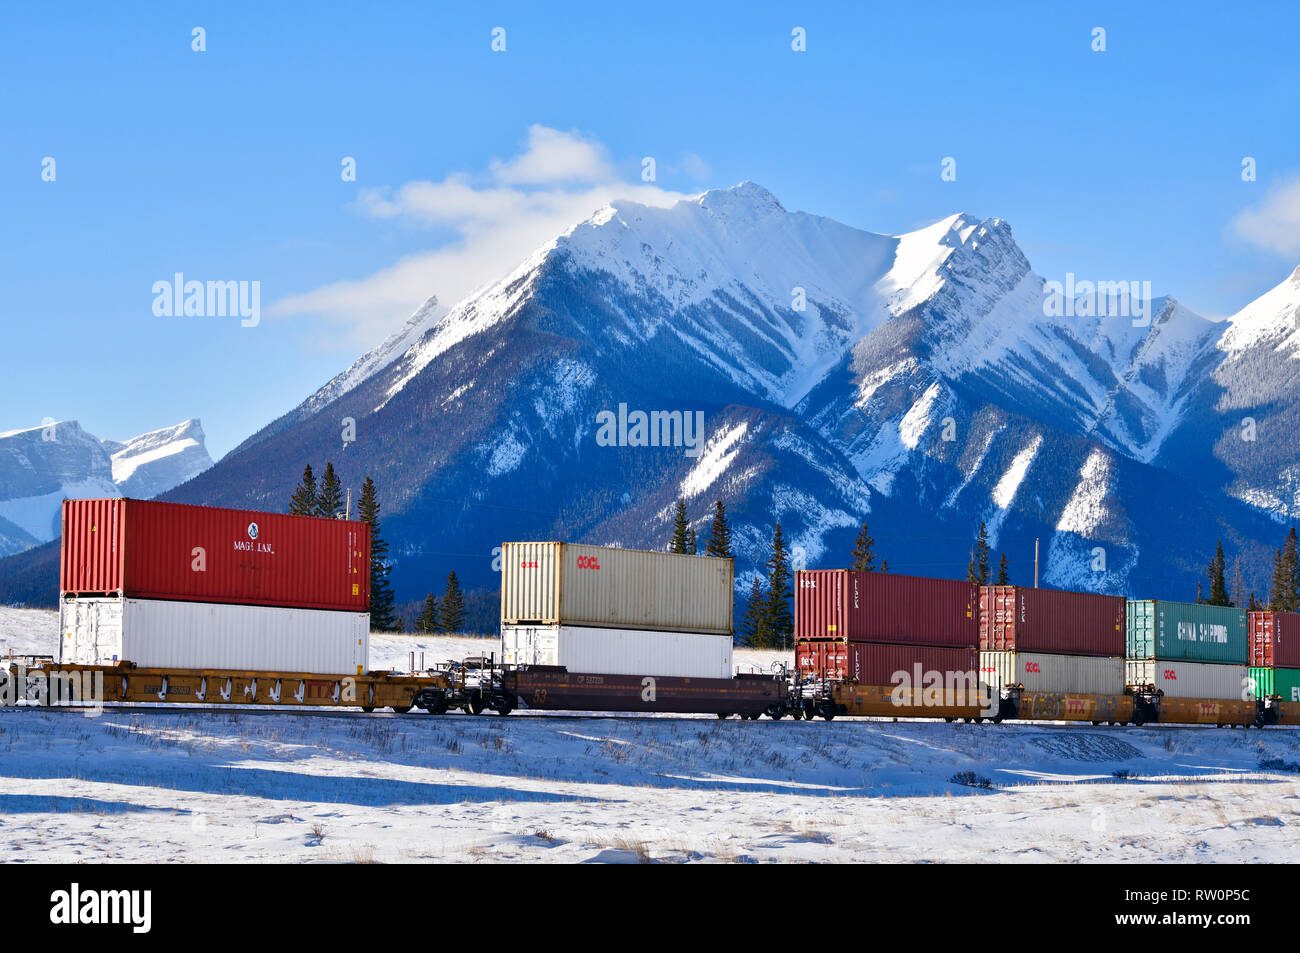 Ein kanadischer nationaler Güterzug, der eine Ladung von Containerautos durch den schneebedeckten felsigen Berg von Alberta Kanada schleppt. Stockfoto